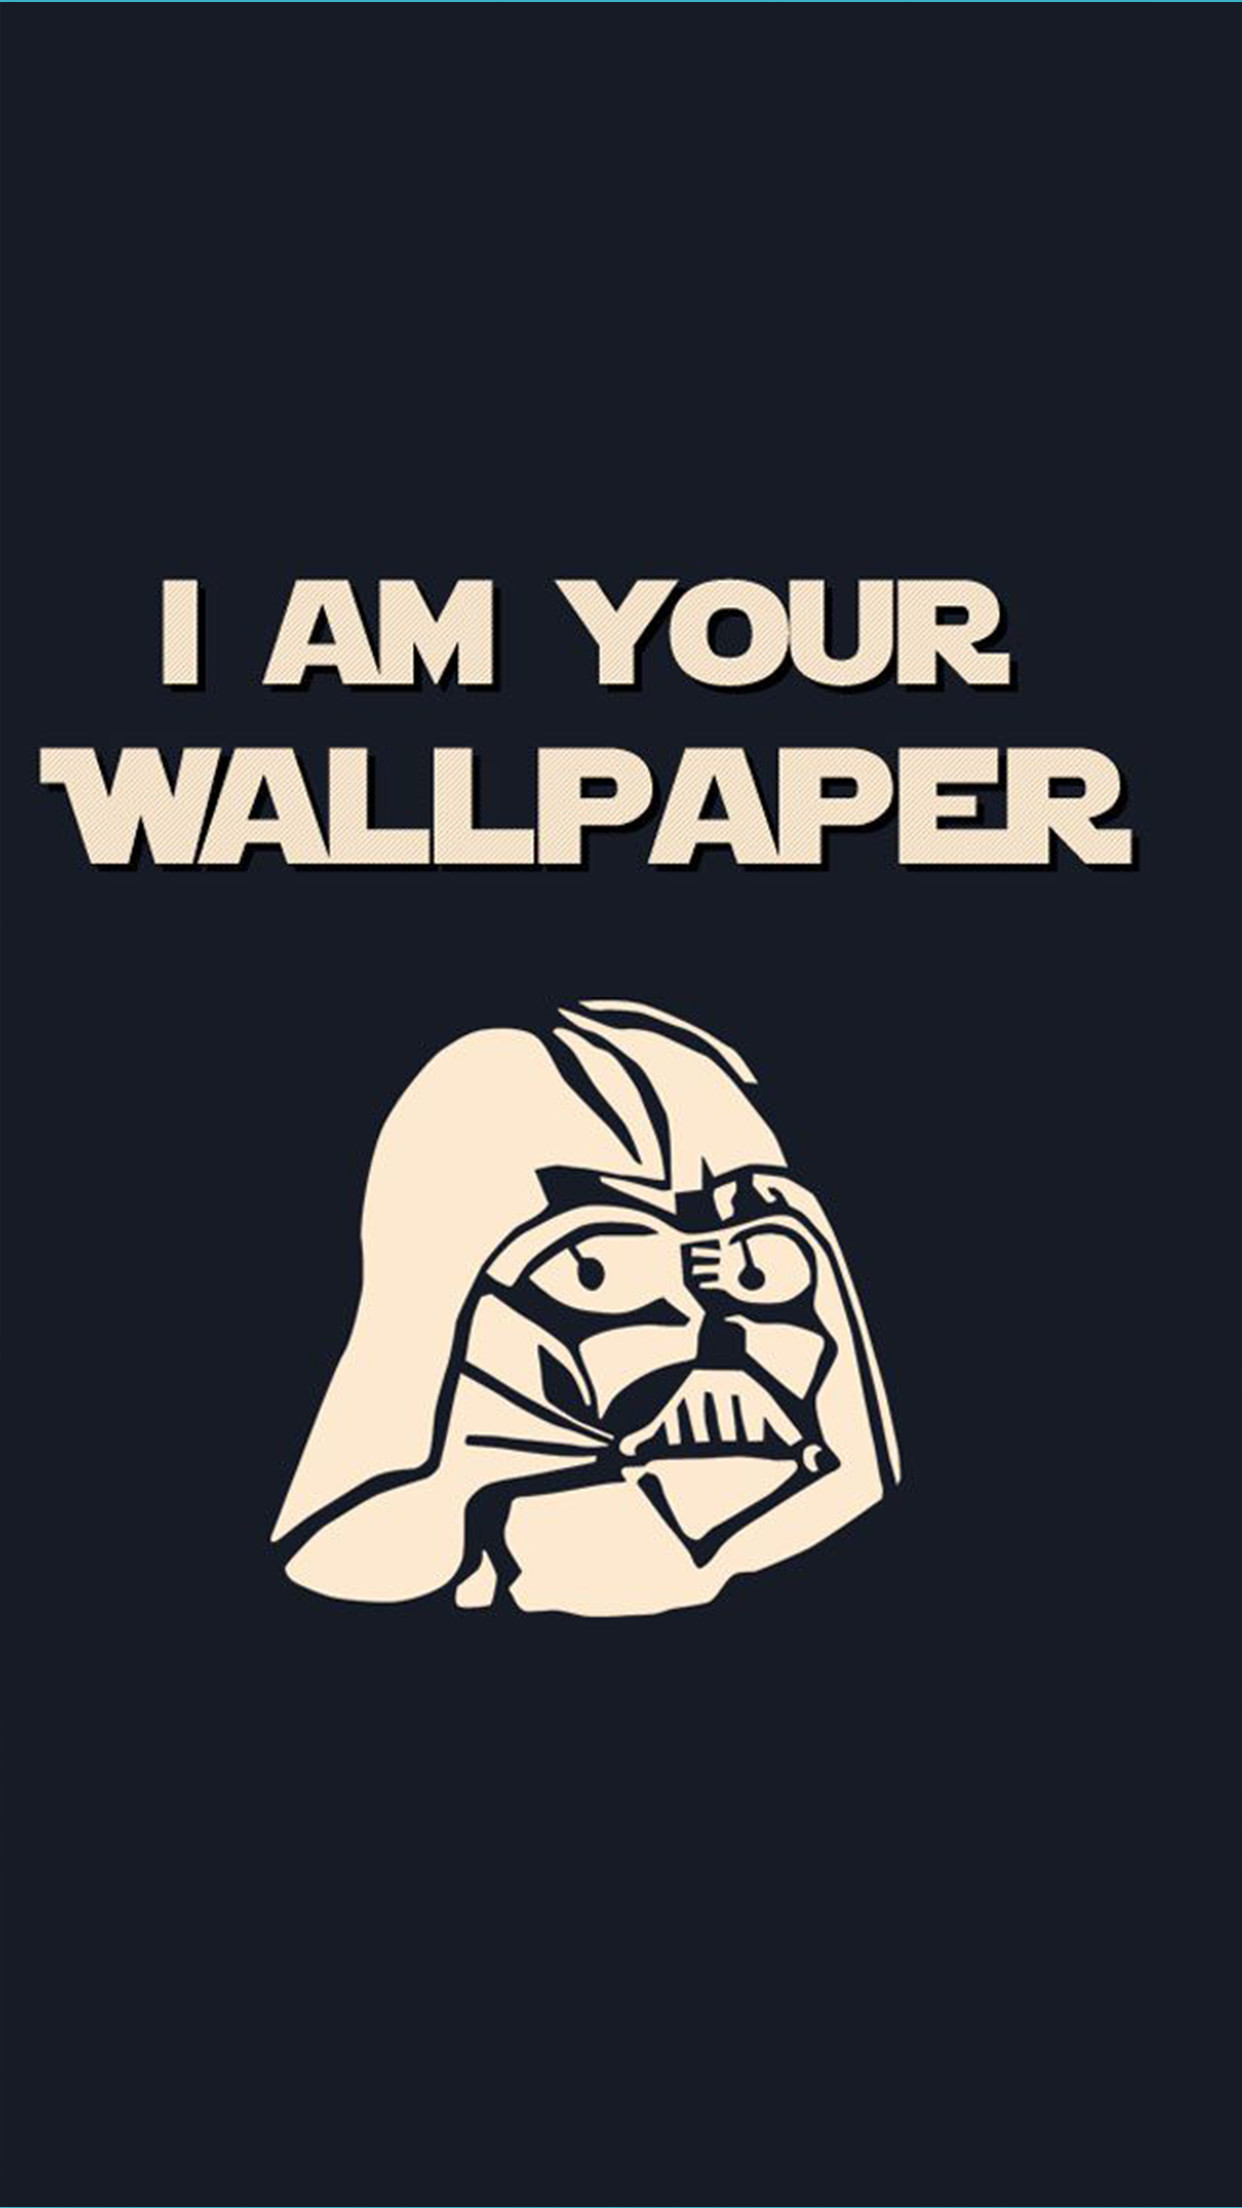 I am your Wallpaper iPhone Wallpaper HD